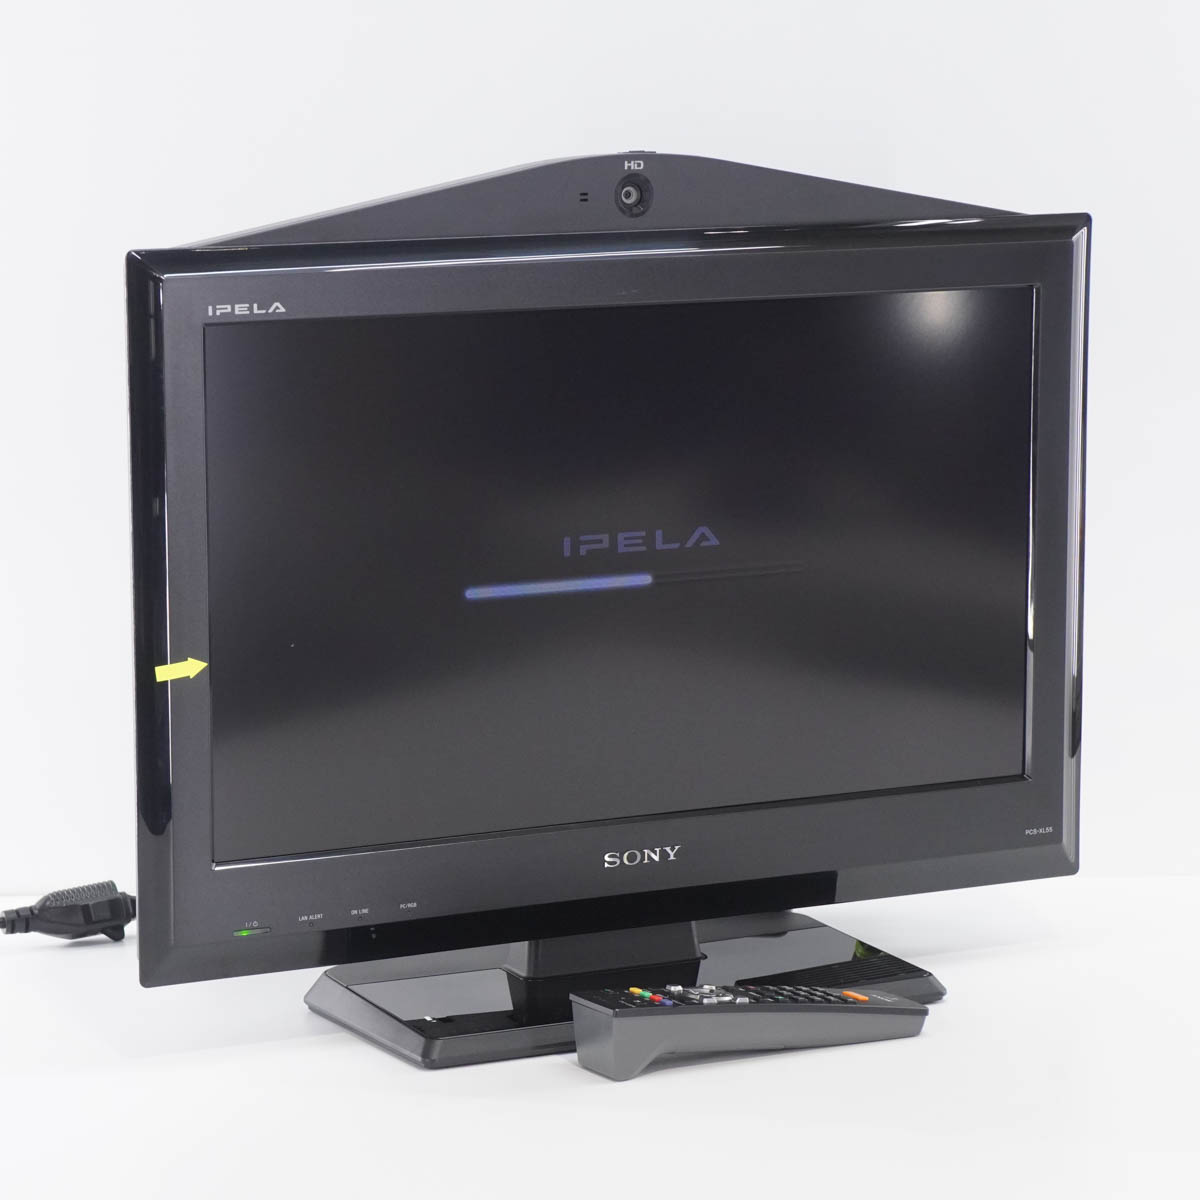 【中古】[PG]8日保証 SONY PCS-XL55 IPELA HDビデオ会議システム HD VISUAL COMMUNICATION SYSTEM 21.6型 21.6インチ 1366×768 A...[ST03403-0003]